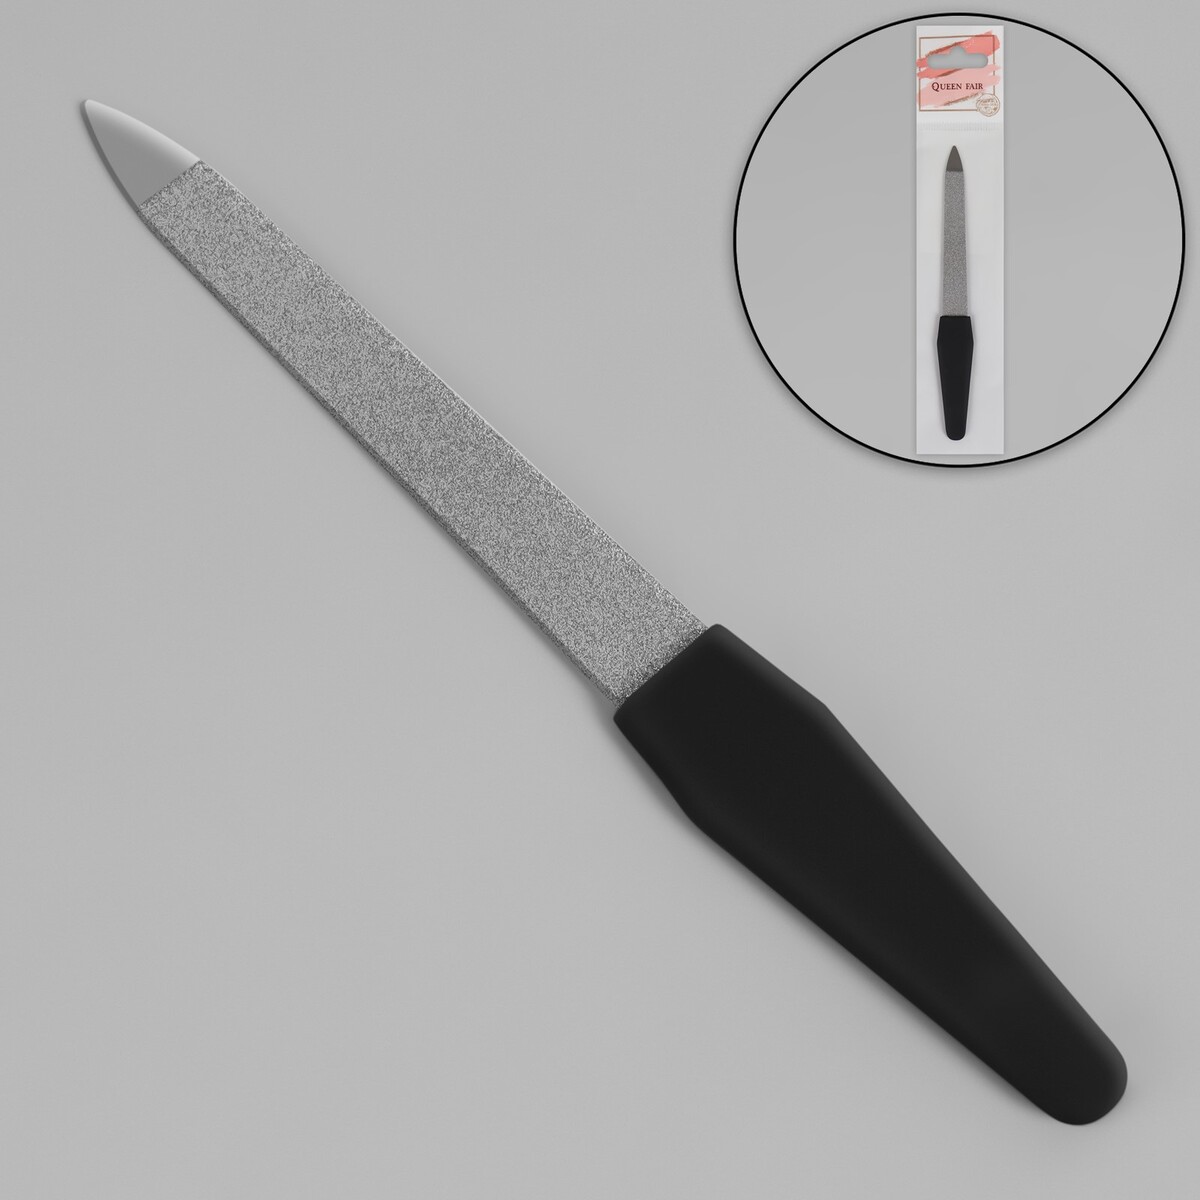 Пилка металлическая для ногтей, прорезиненная ручка, 12 см, цвет серебристый/черный